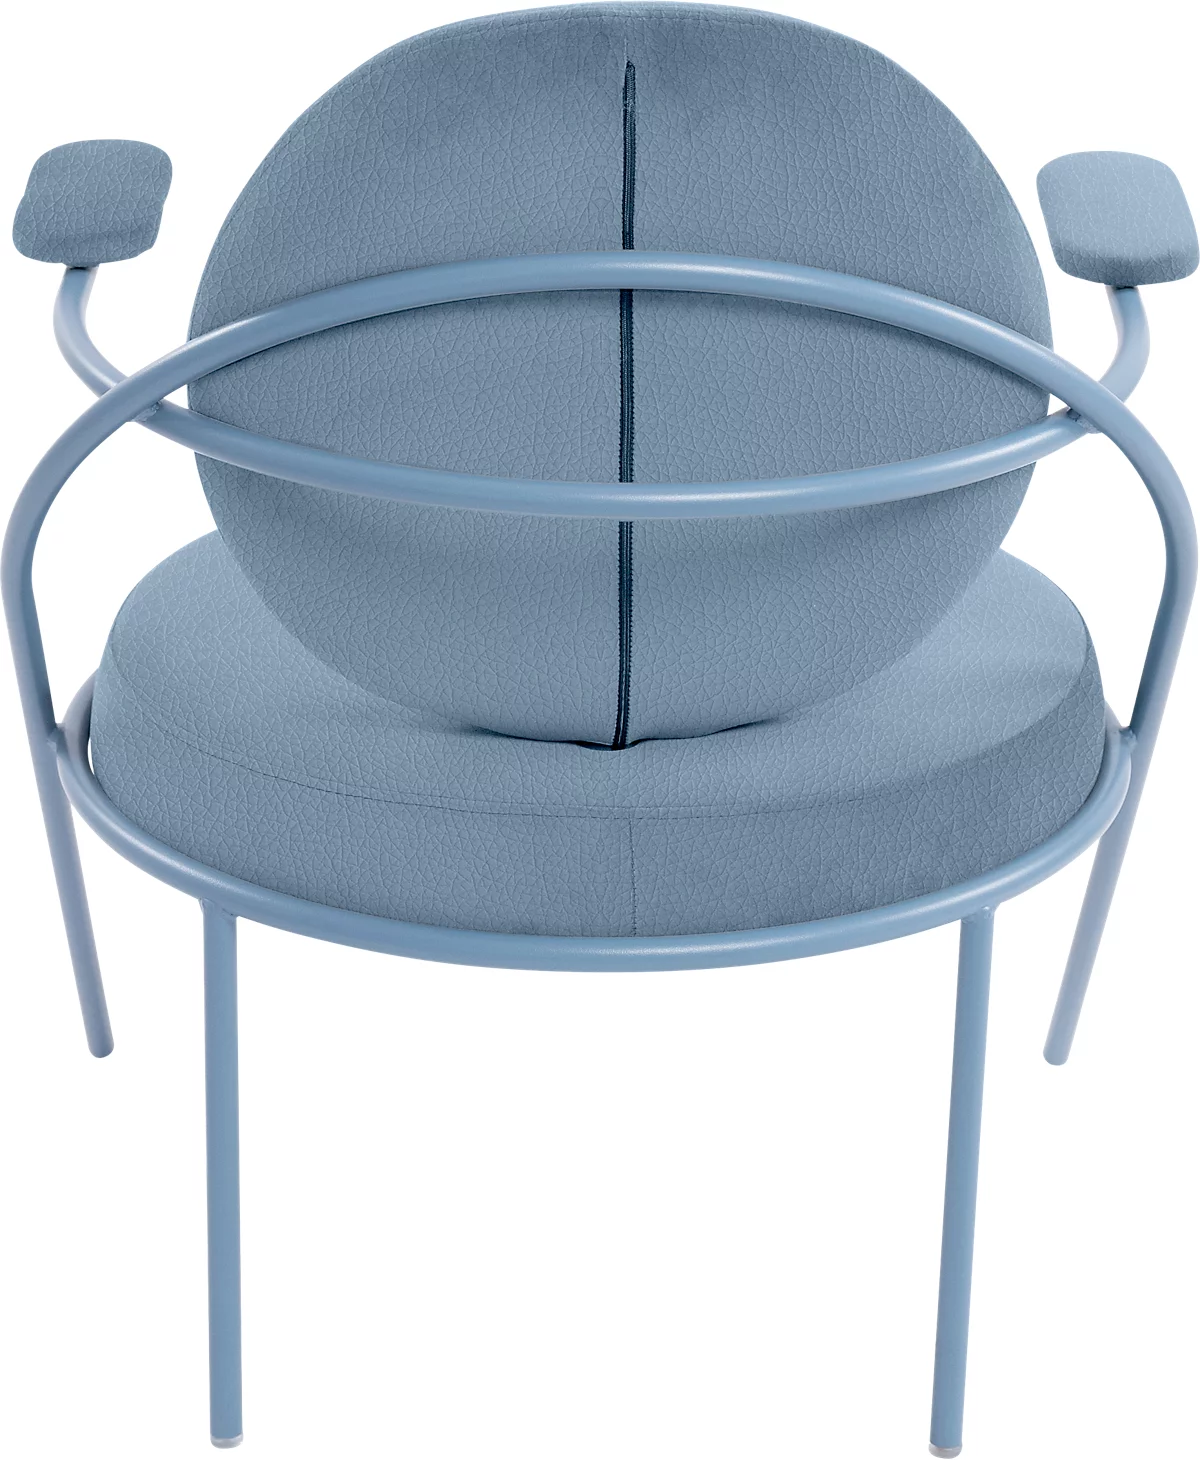 Sessel Meet by Paperflow Saturne, mit Armlehnen, B 700 x T 730 x H 880 mm, Stahlrohr, Kunstleder, Blau/Blau